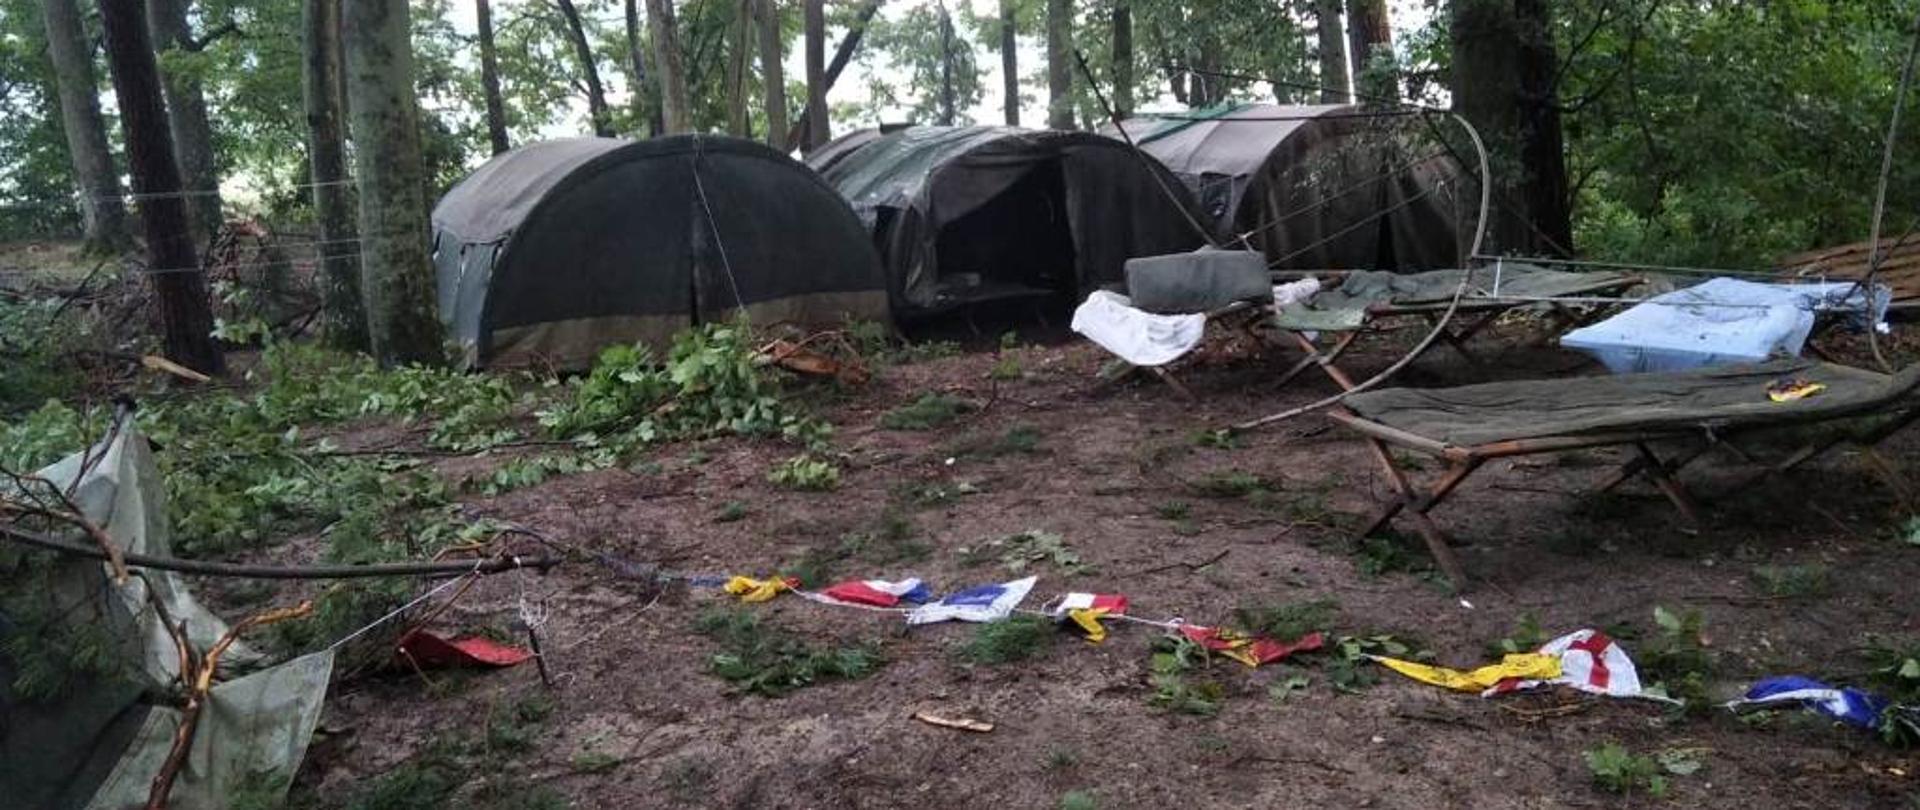 Zniszczone namioty na obozie harcerskim po nawałnicy